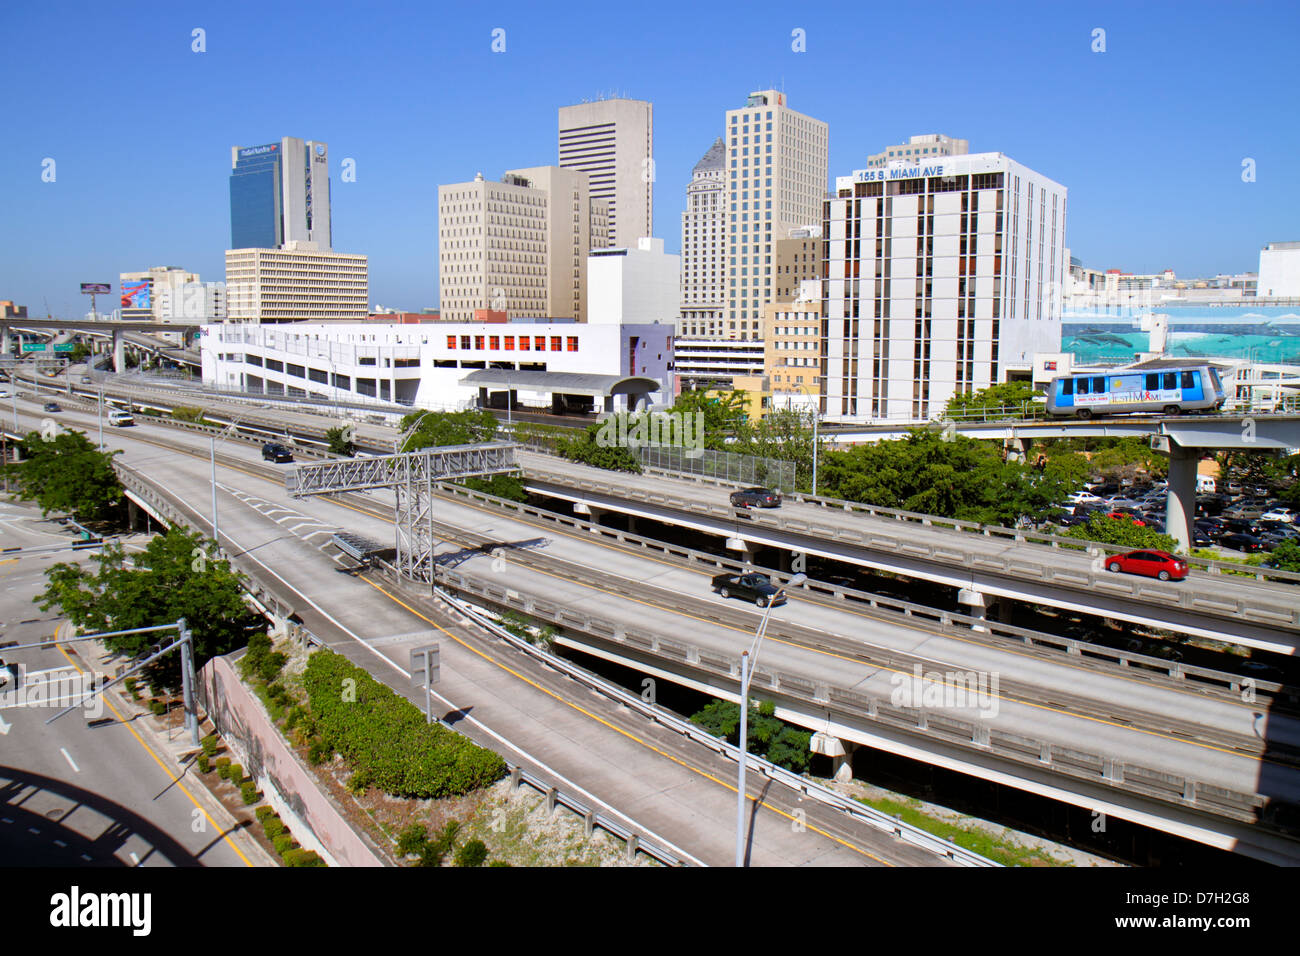 Miami Florida, centre-ville, horizon de la ville, I 95 rampes de sortie d'Interstate, autoroute, Metromover, People Mover, bâtiments, horizon de la ville, circulation, FL121030062 Banque D'Images